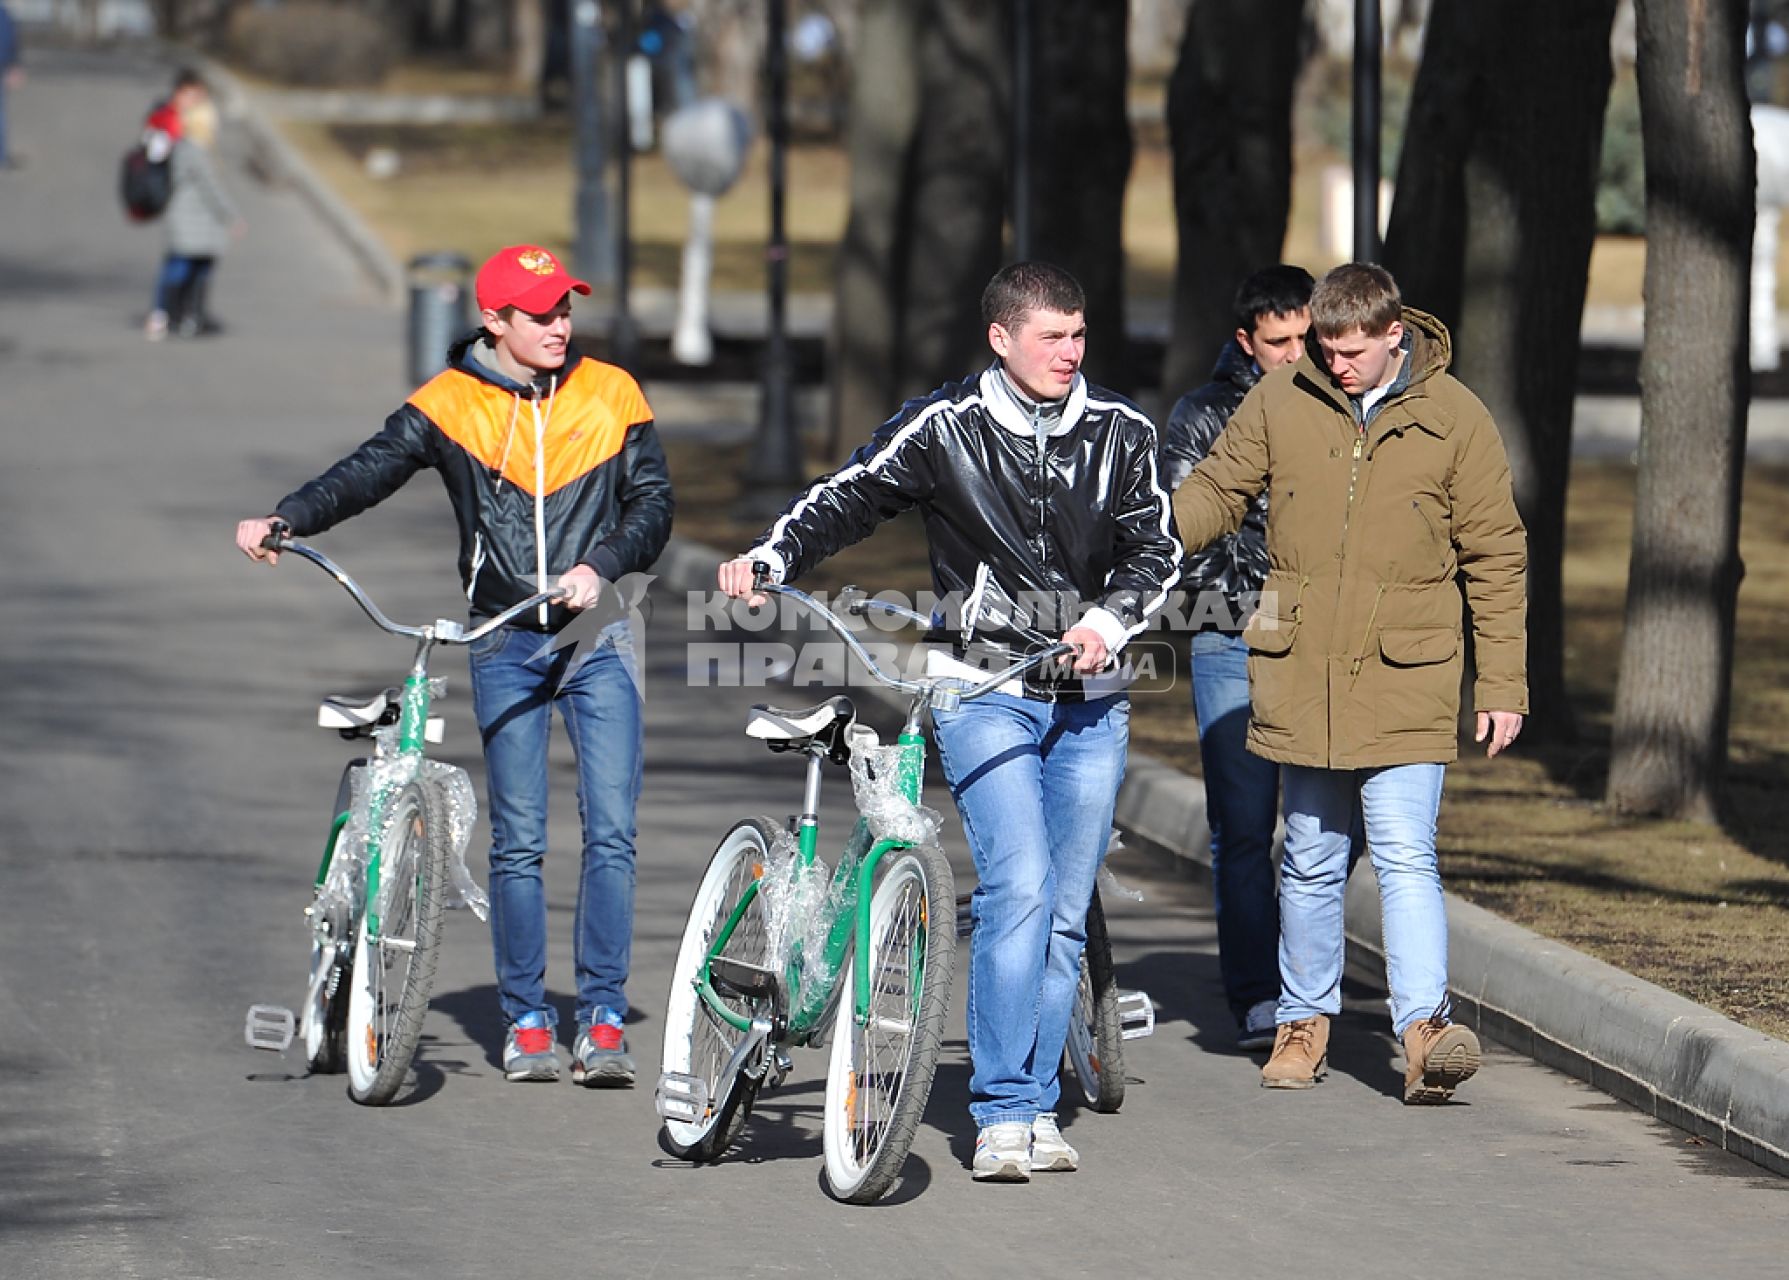 Парк культуры и отдыха имени Горького. На снимке: молодые люди с велосипедом.